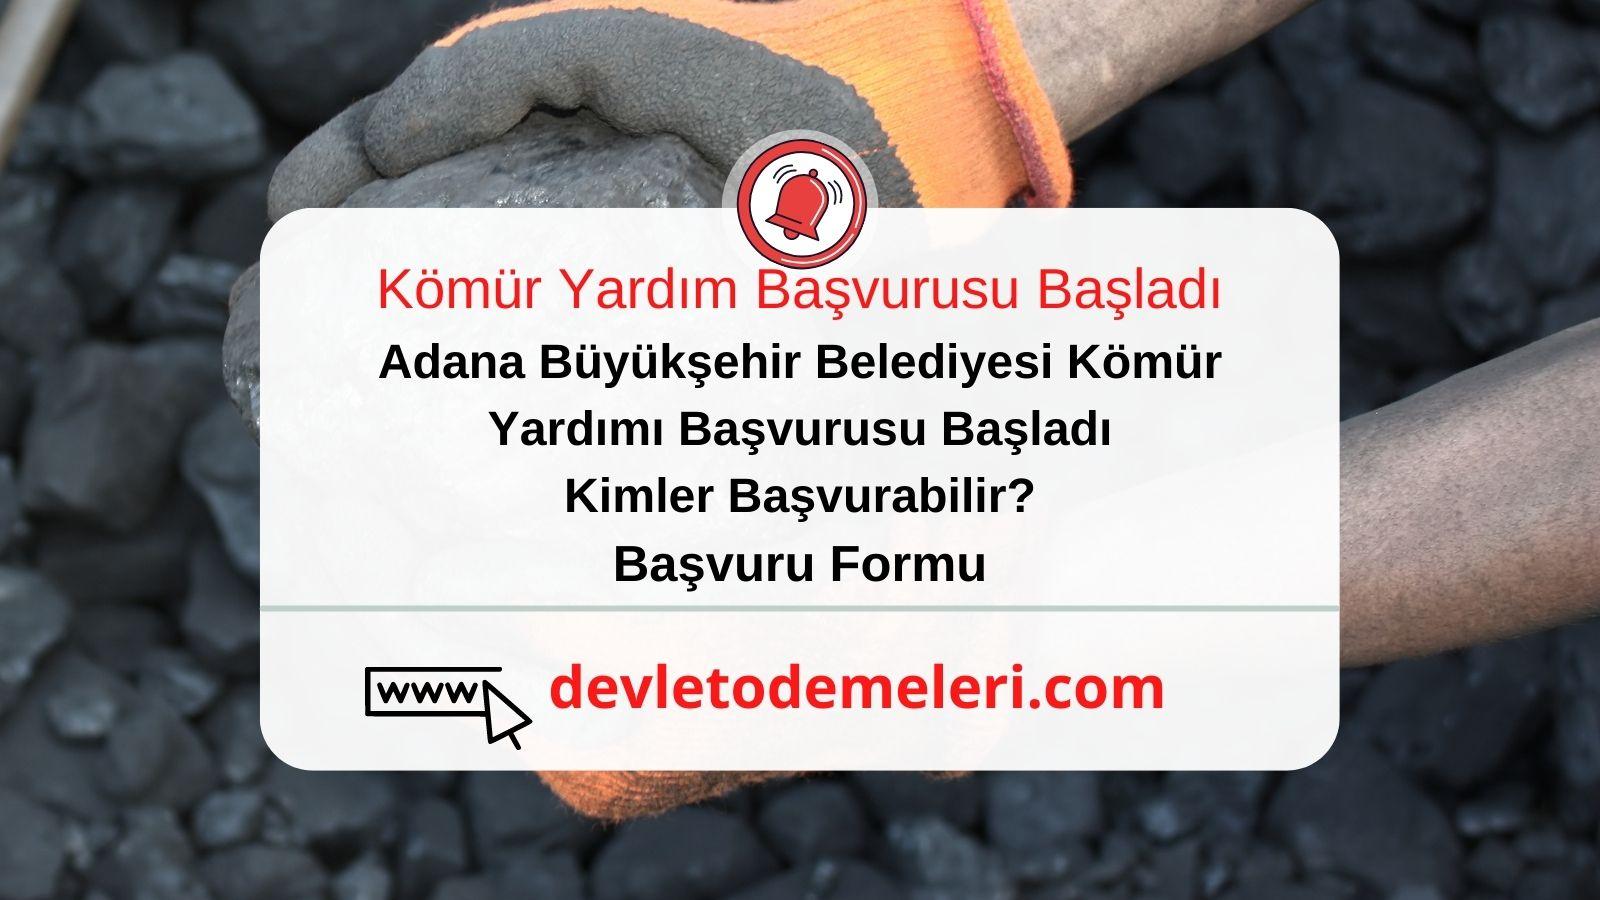 Adana Büyükşehir Belediyesi Kömür Yardımı Başvurusu